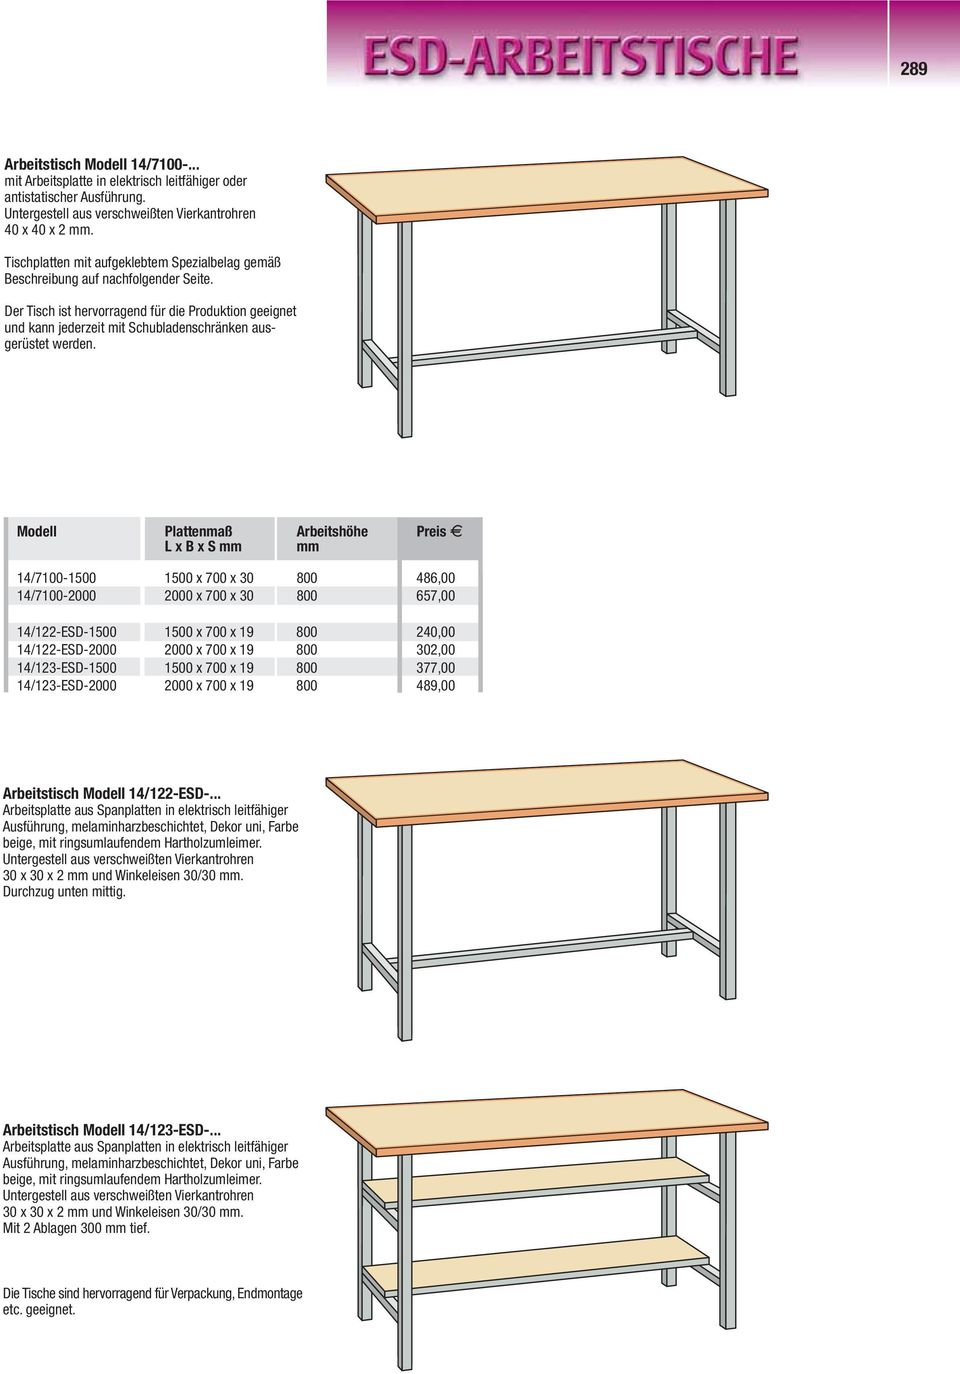 Der Tisch ist hervorragend für die Produktion geeignet und kann jederzeit mit Schubladenschränken ausgerüstet werden.